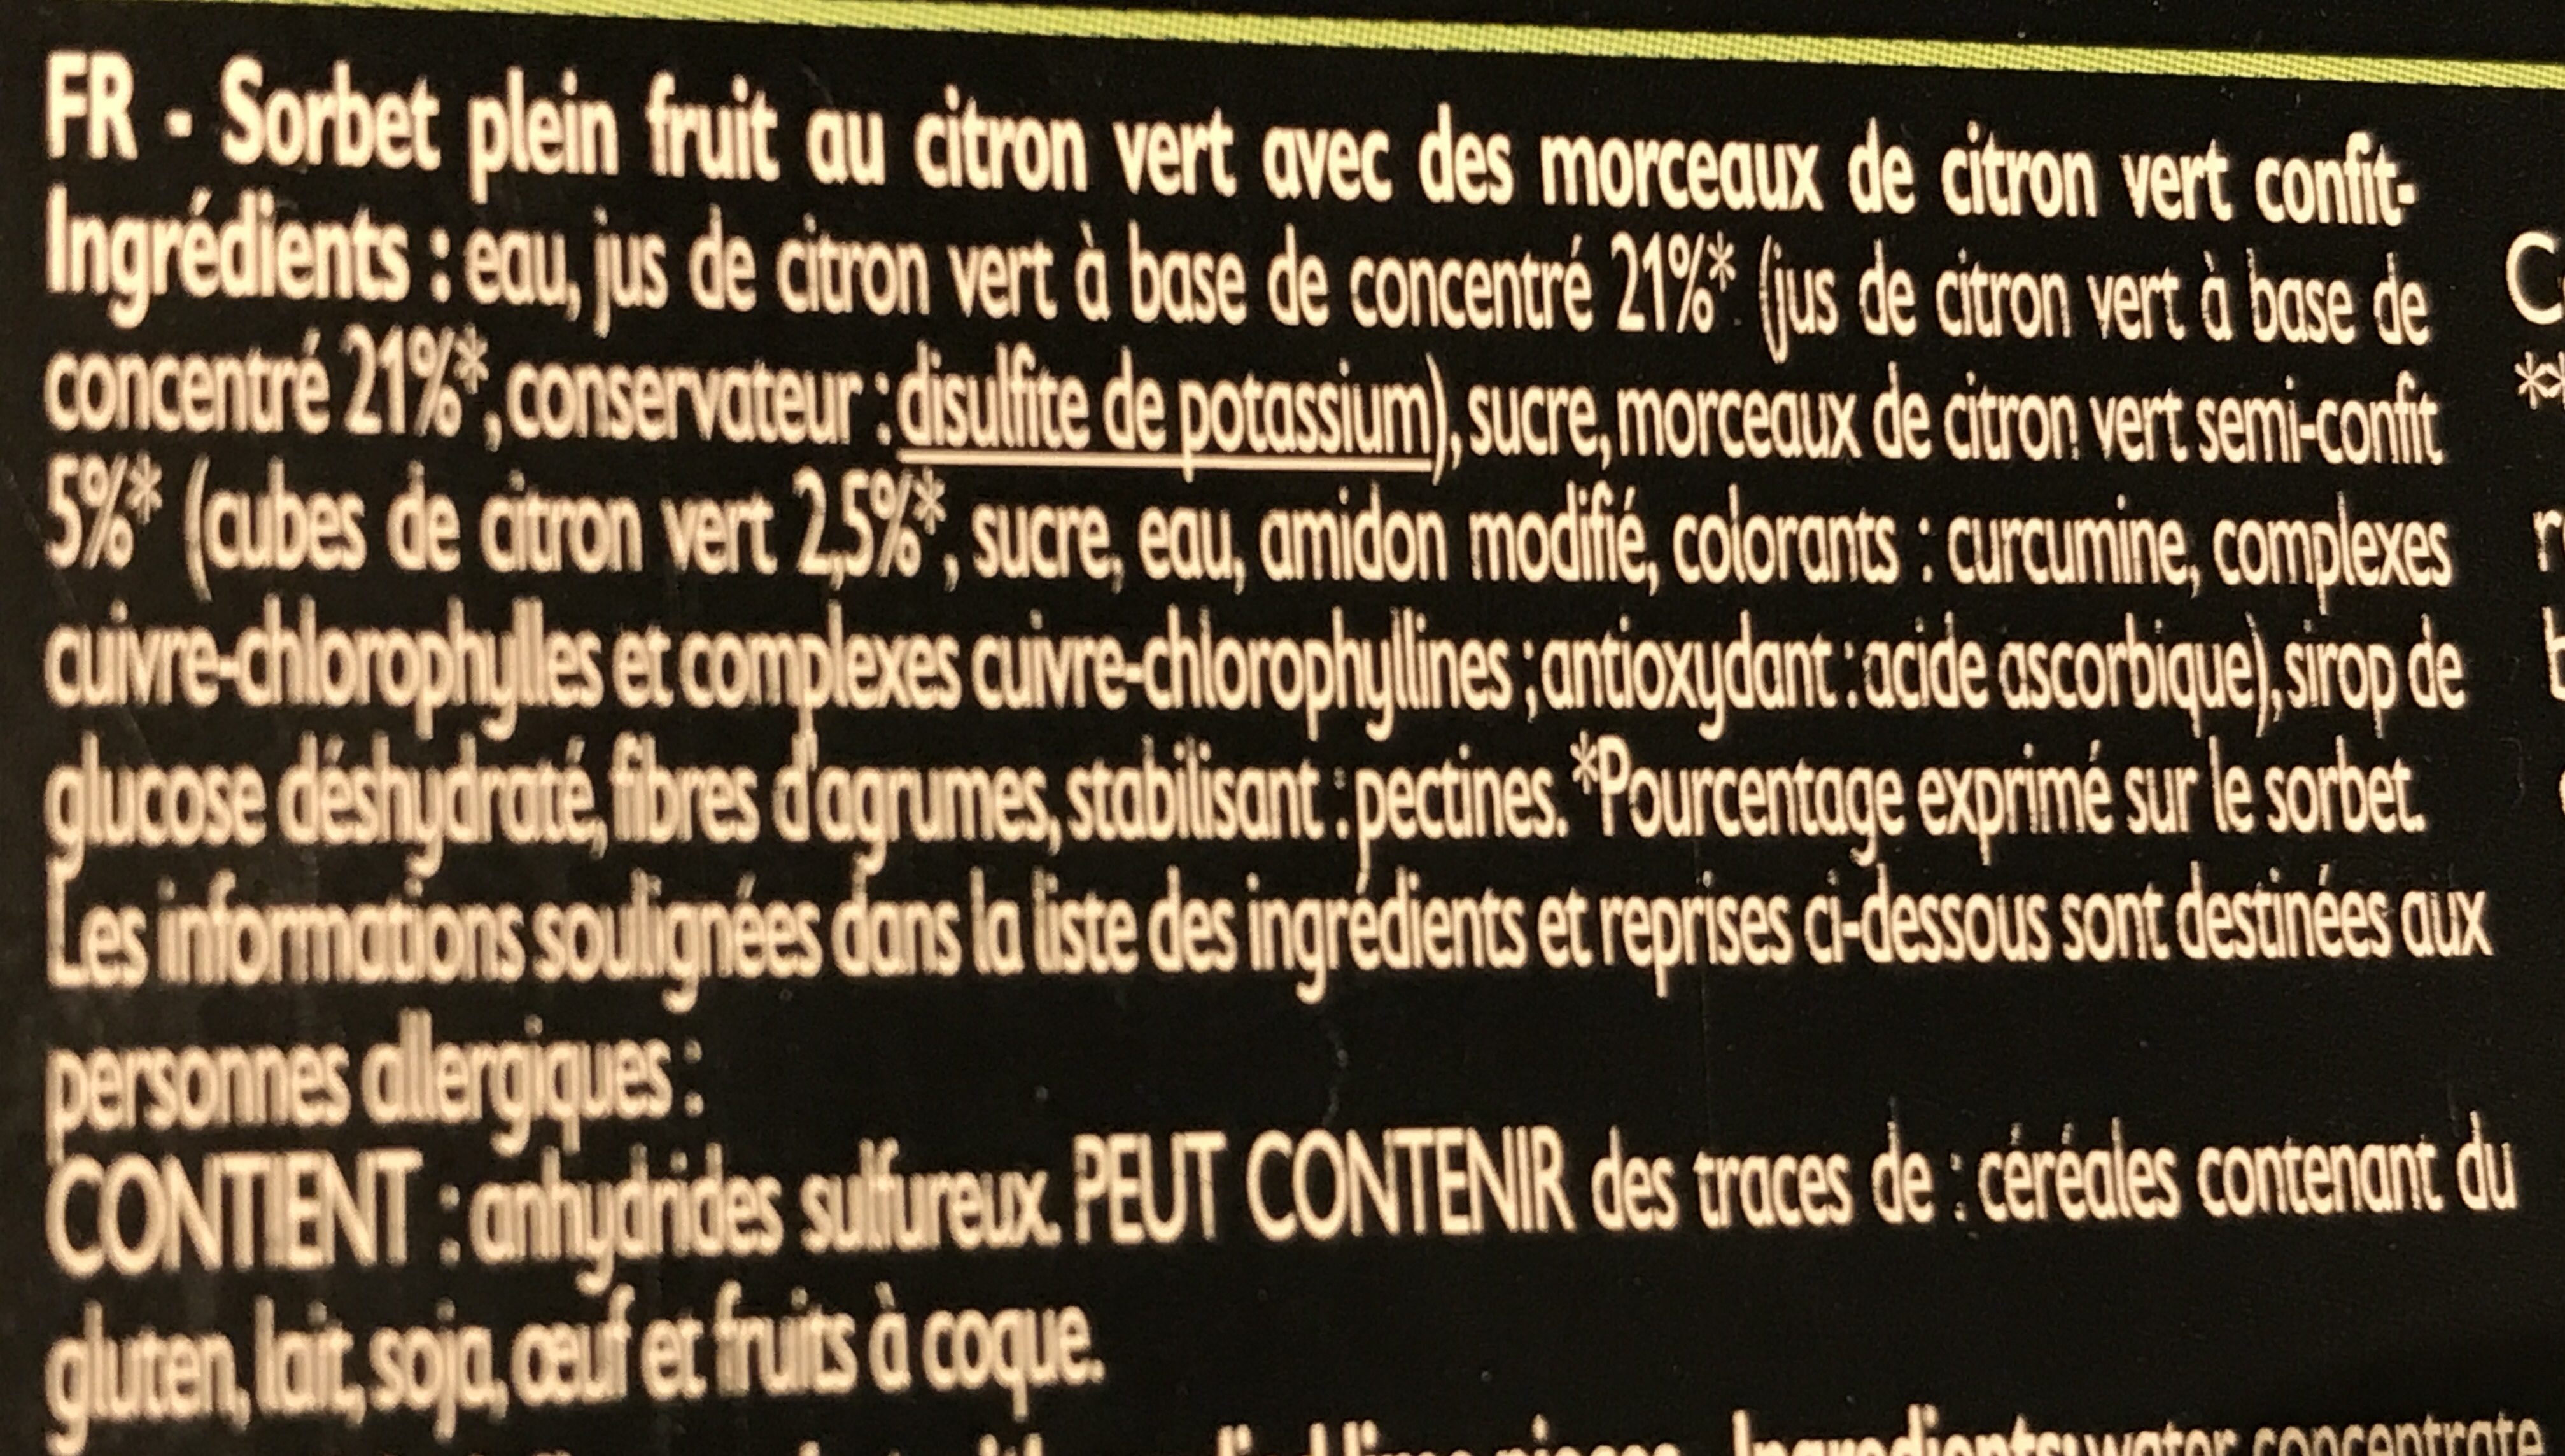 Sorbet Citron Vert - Ingredients - fr